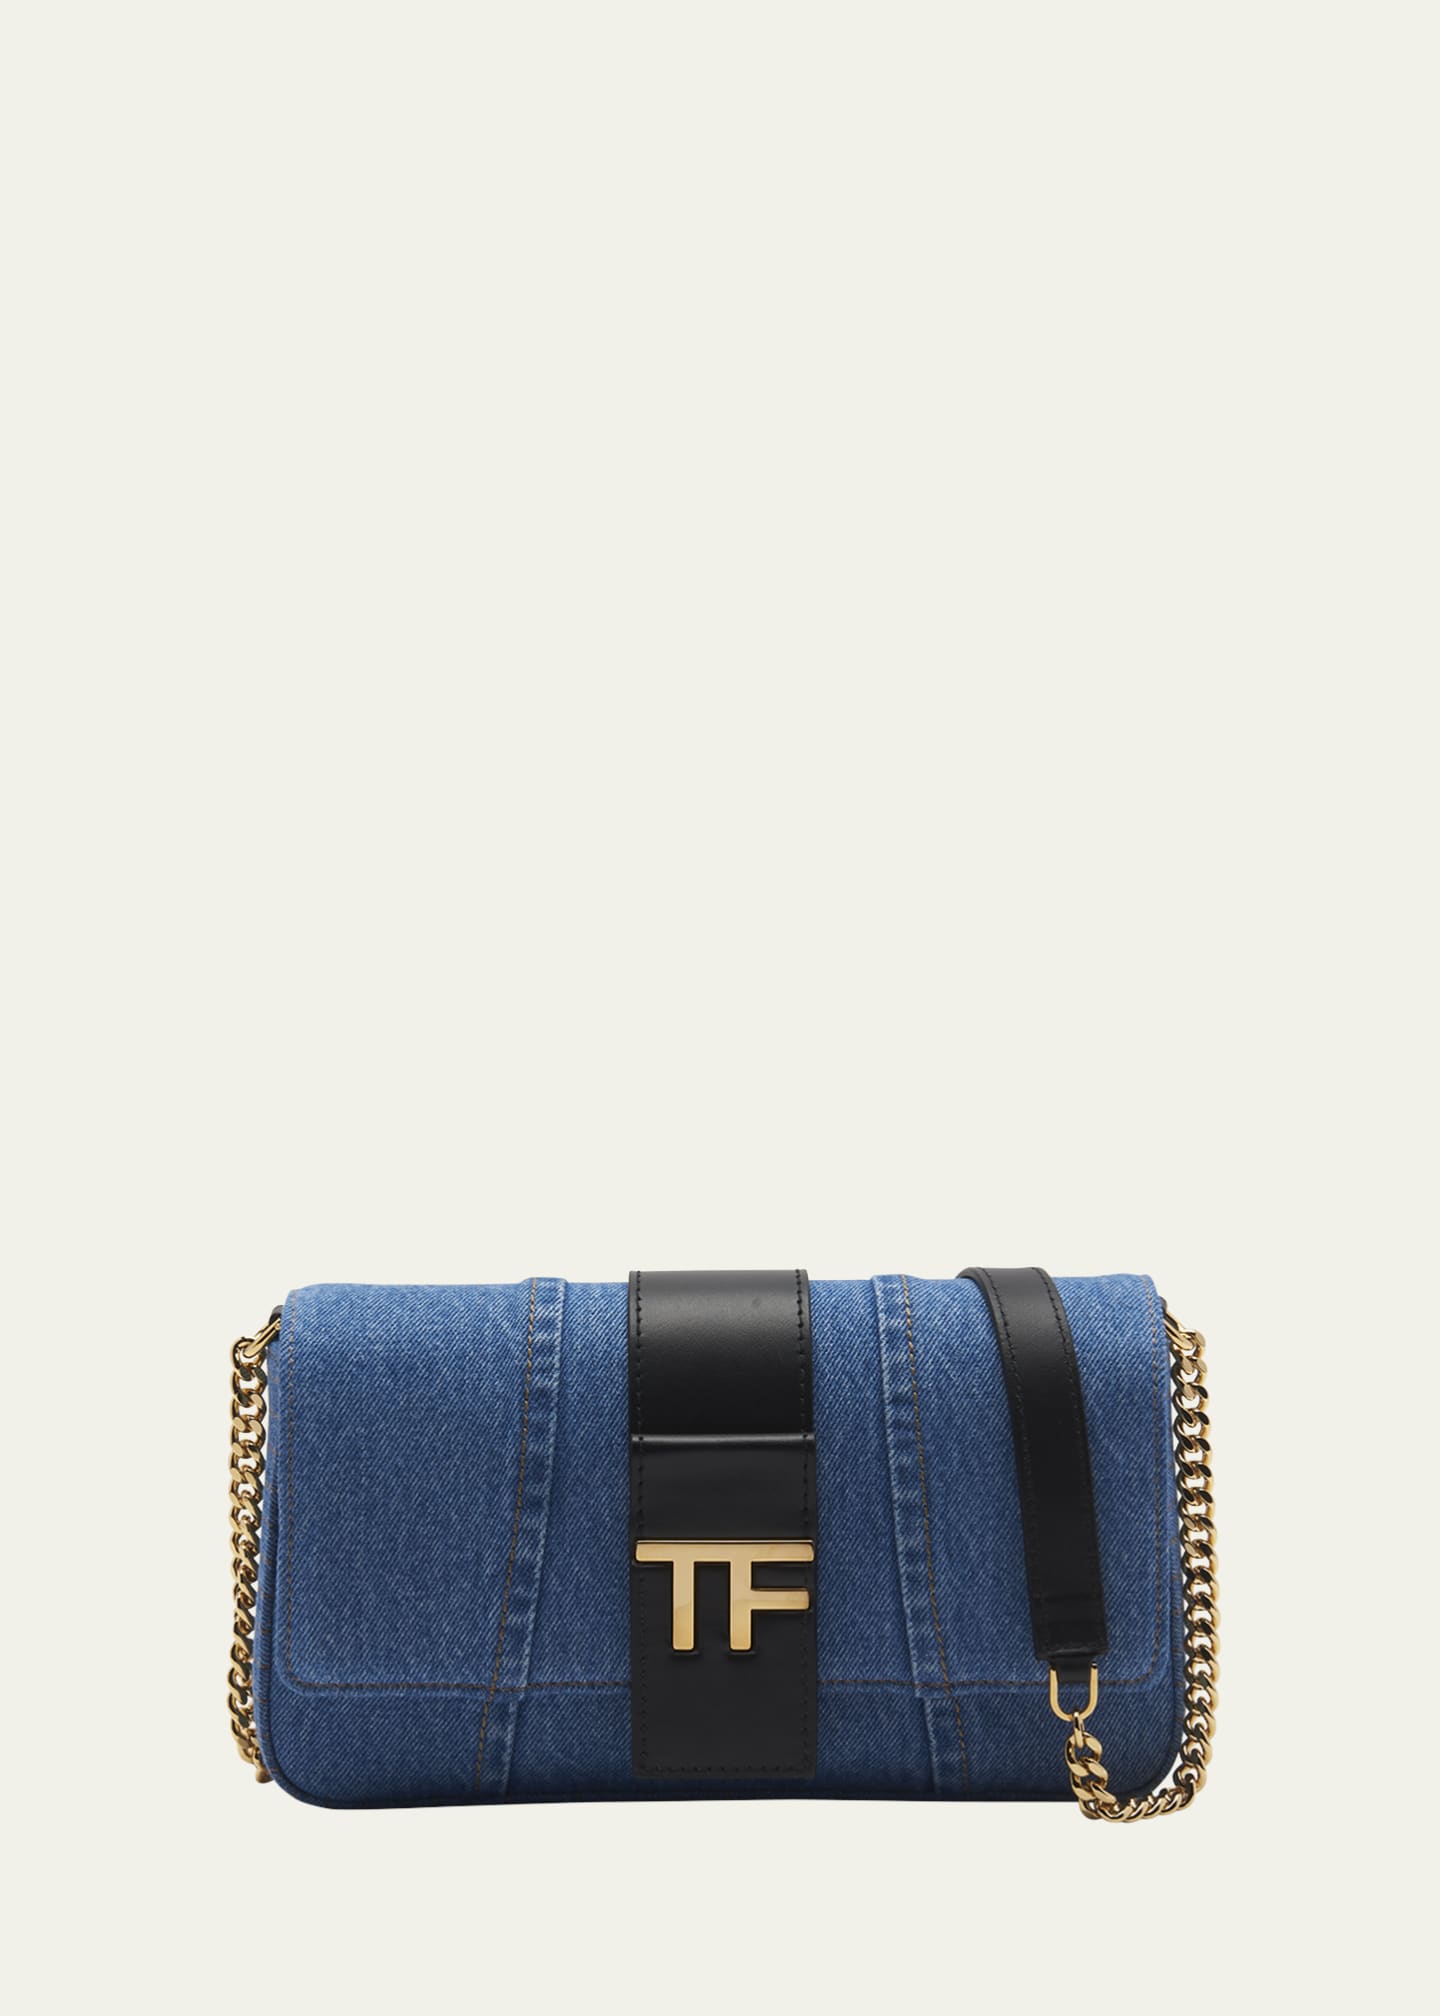 Luxury Jeans Bag, Shoulder Bag